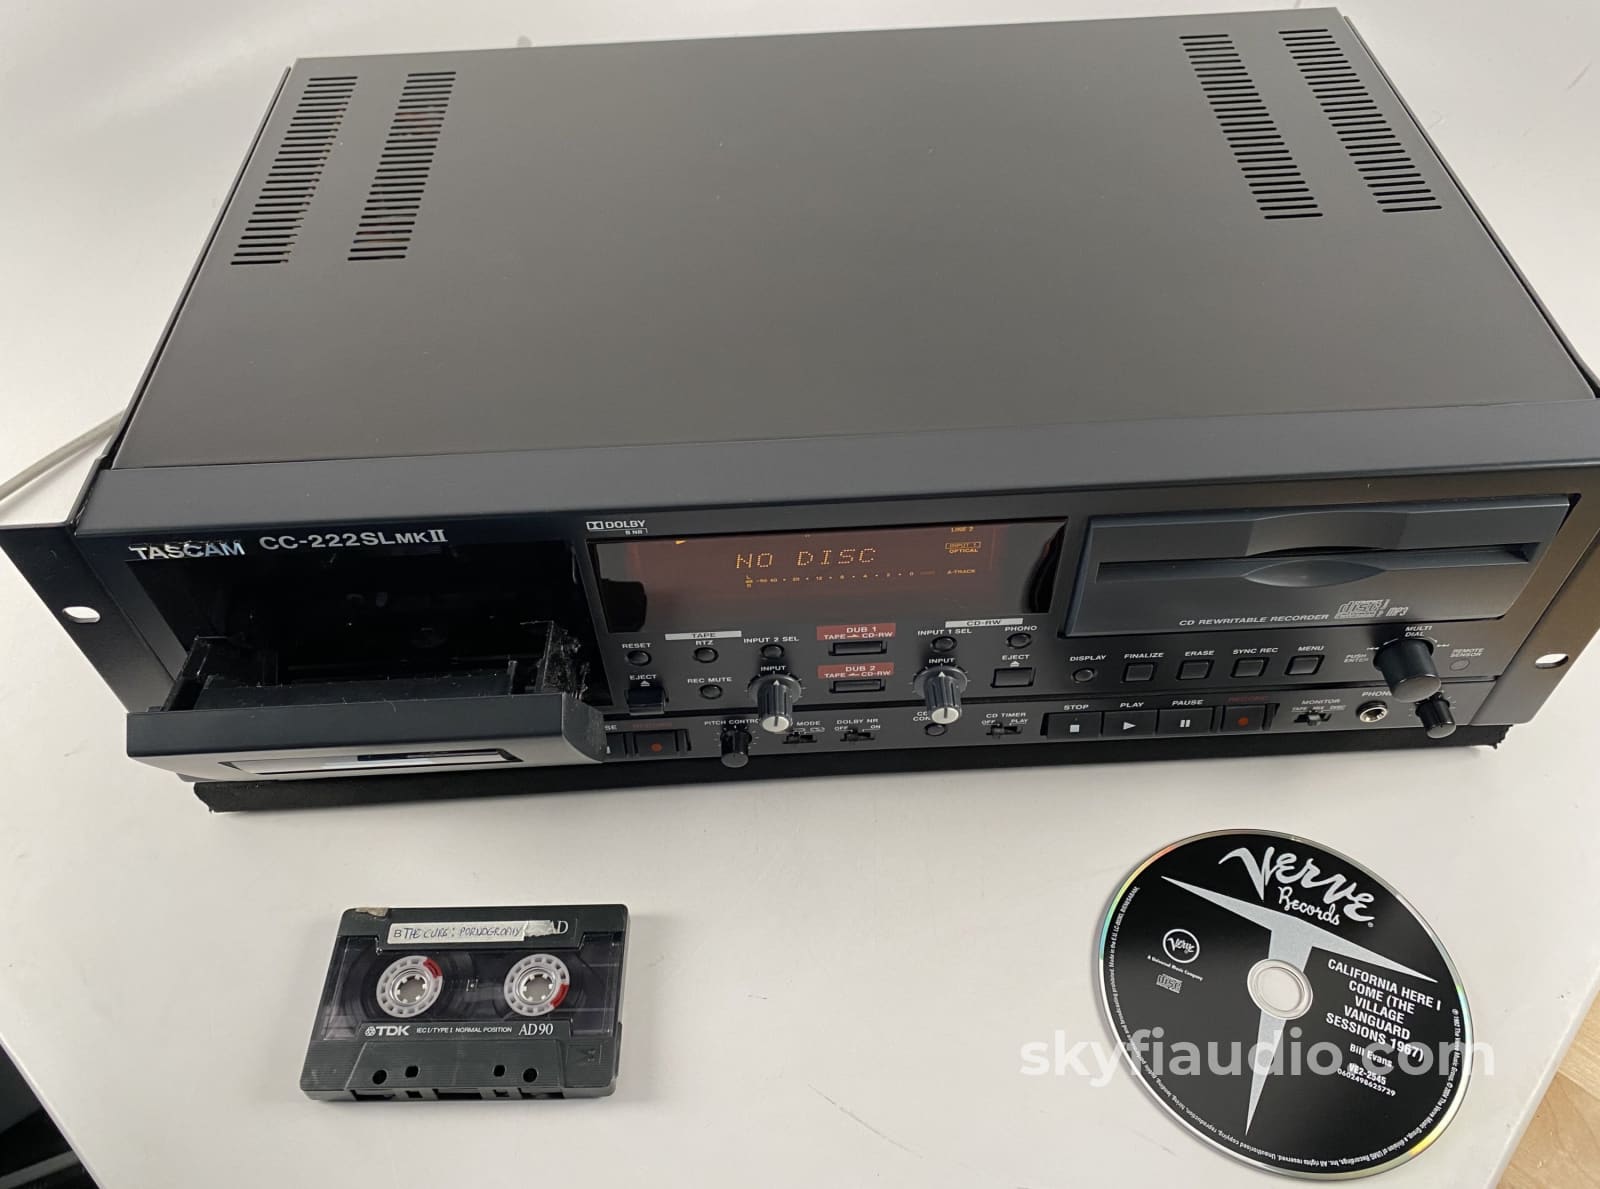 TASCAM CC-222SLMKII - CD Recorder / Cassette Combination Deck